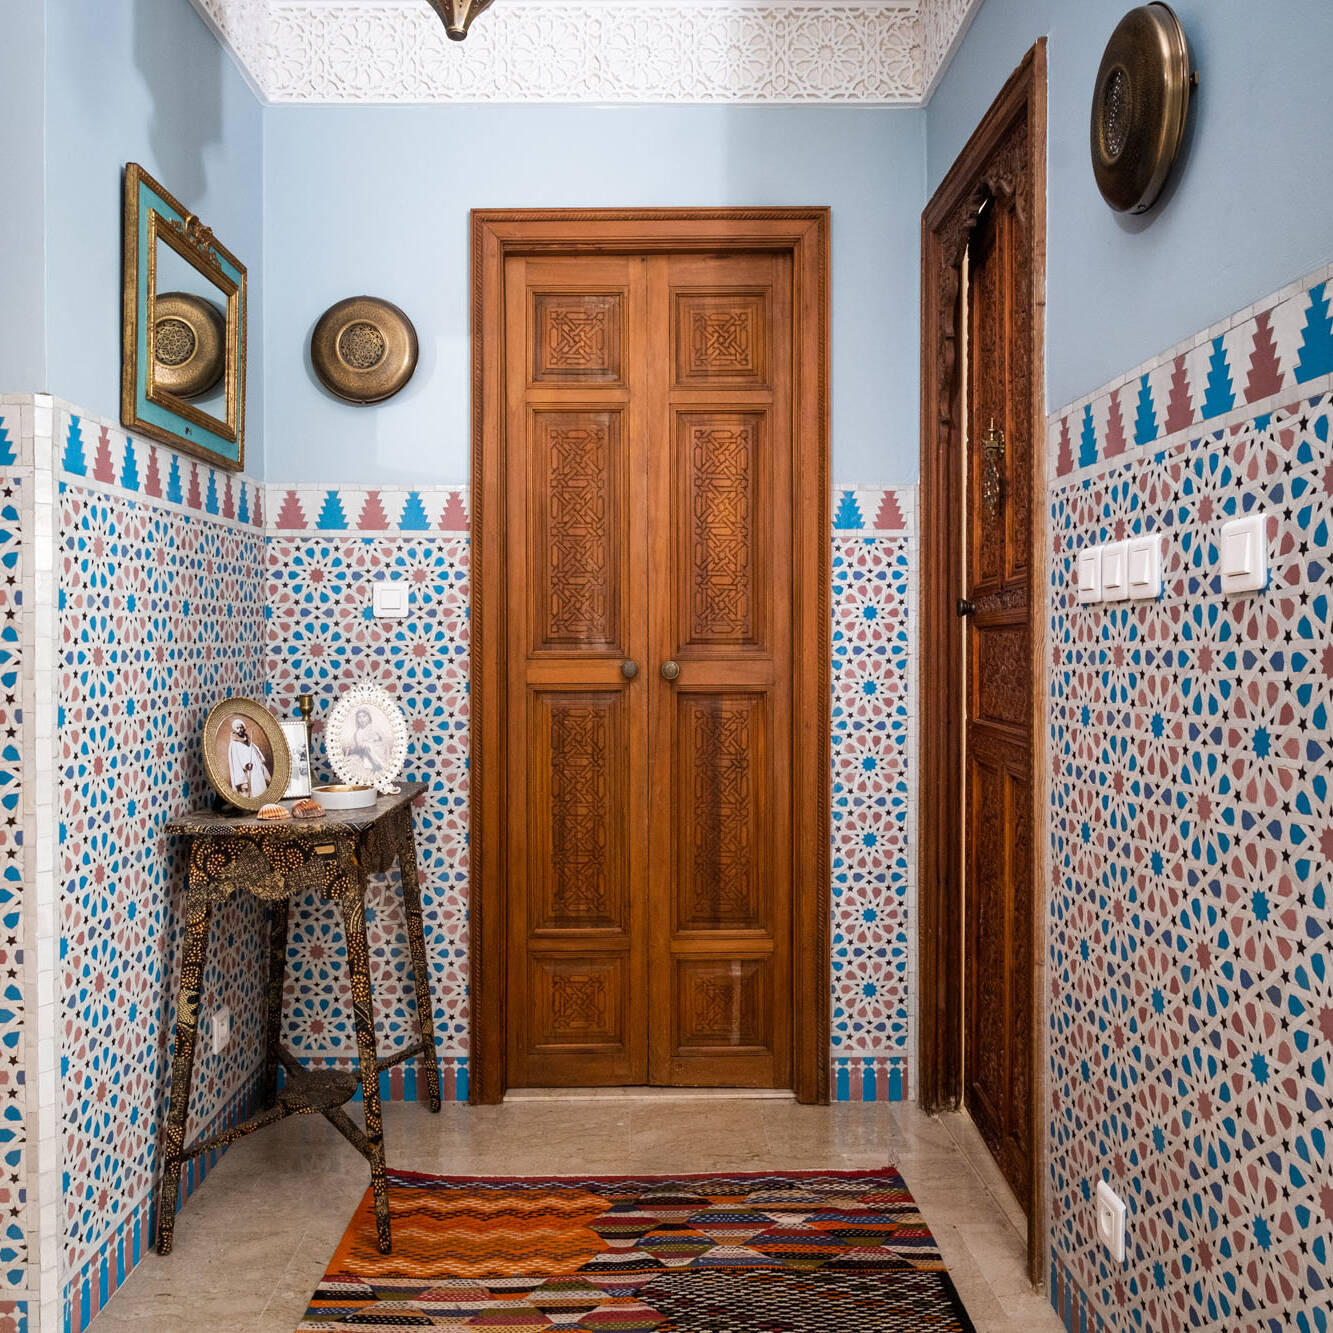 Moroccan Interiors pic